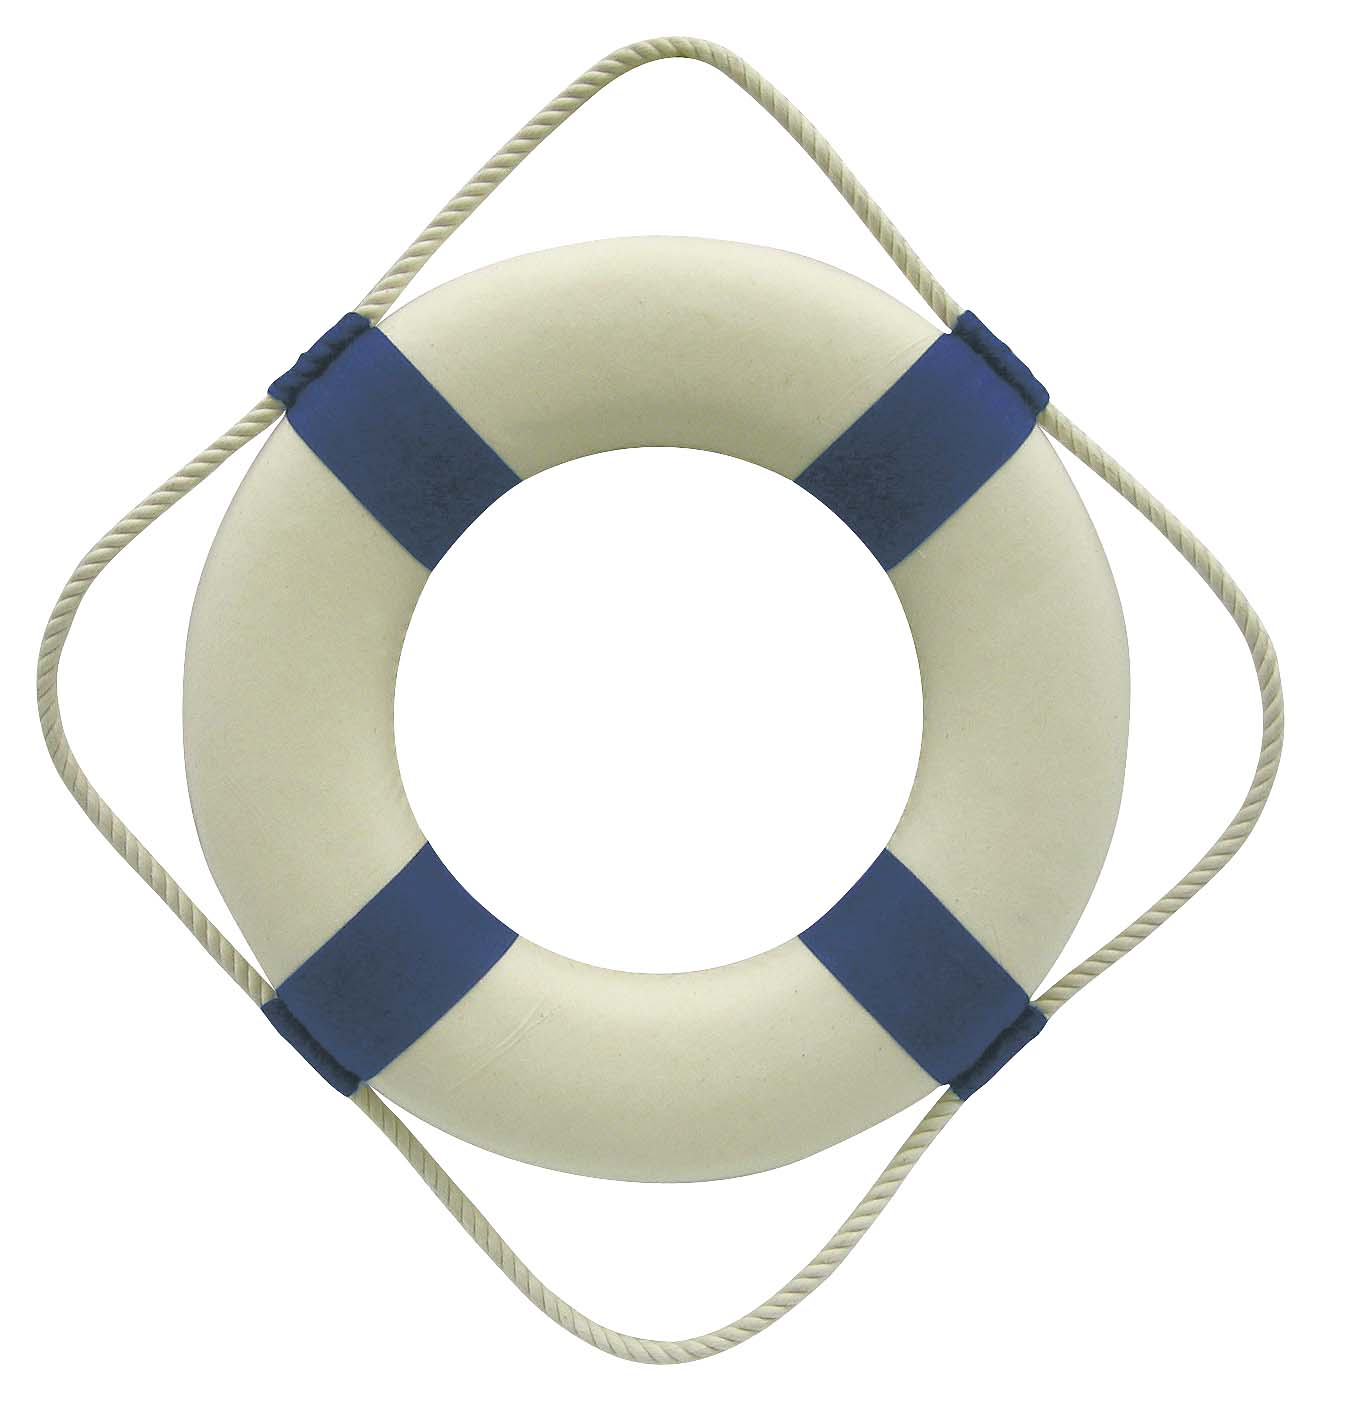 SEA CLUB Záchranný kruh dekorační Ø 30 cm 5575